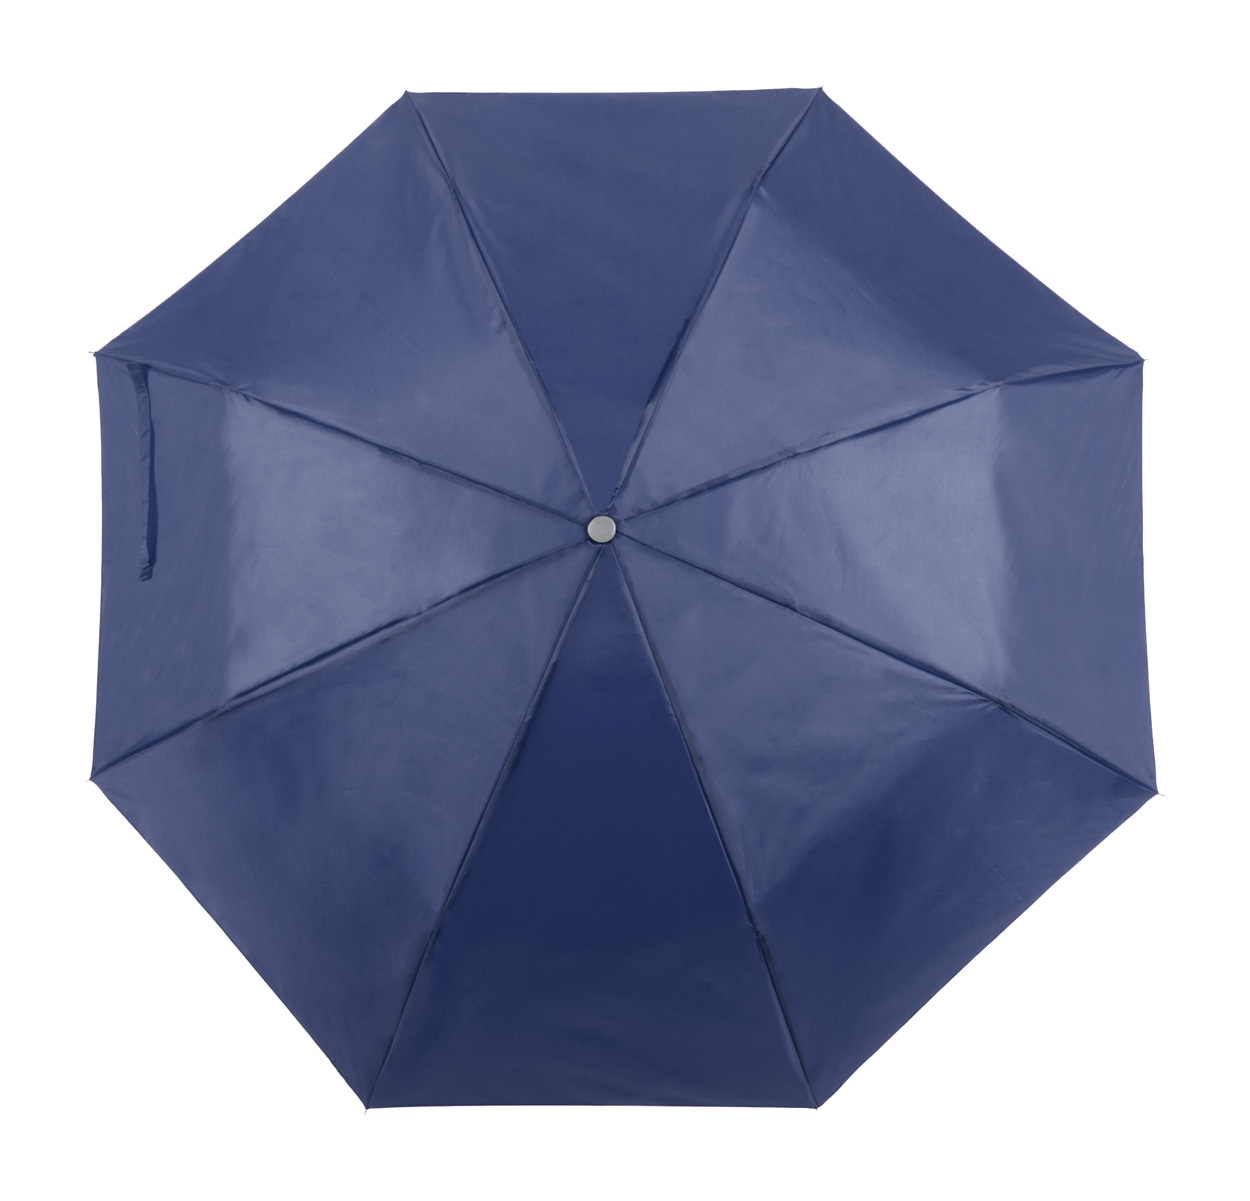 Ziant umbrella - blue